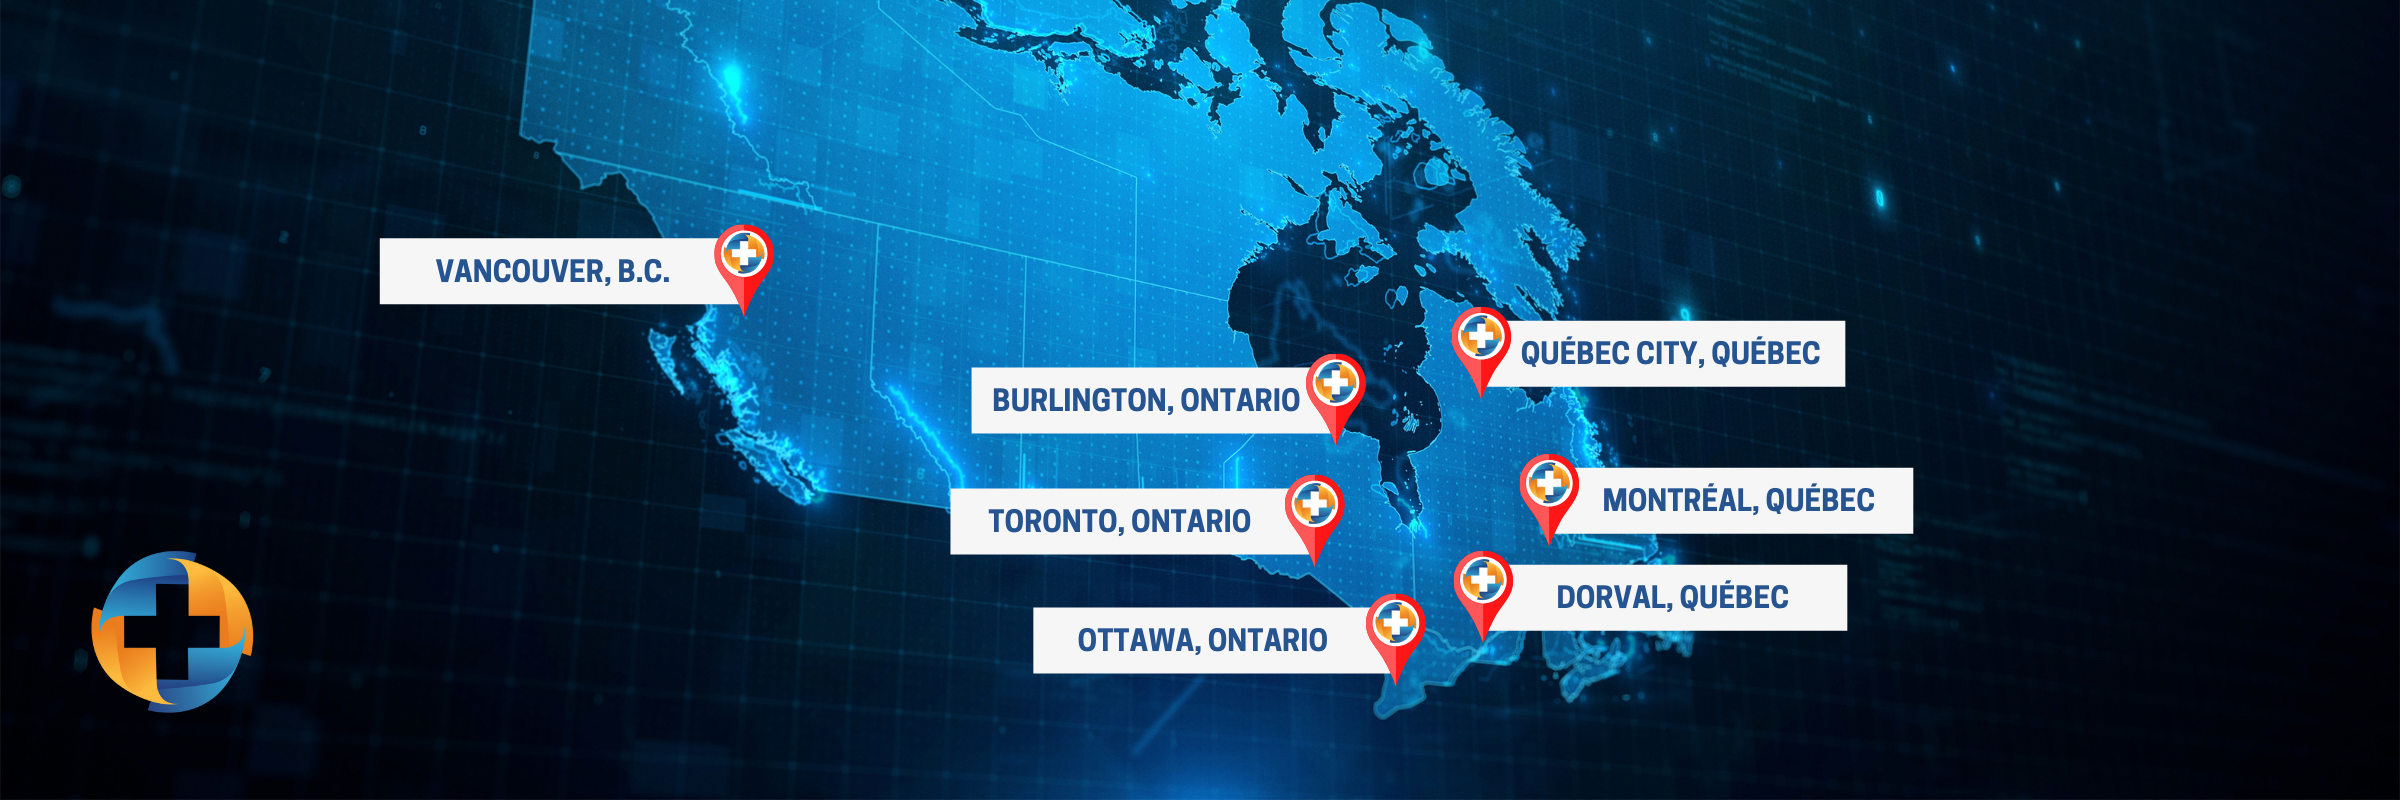 Une carte du Canada en couleur bleue, pointant les sept sites d'Isologic, Vancouver, Burlington, Toronto, Ottawa, Dorval, Montréal, Québec